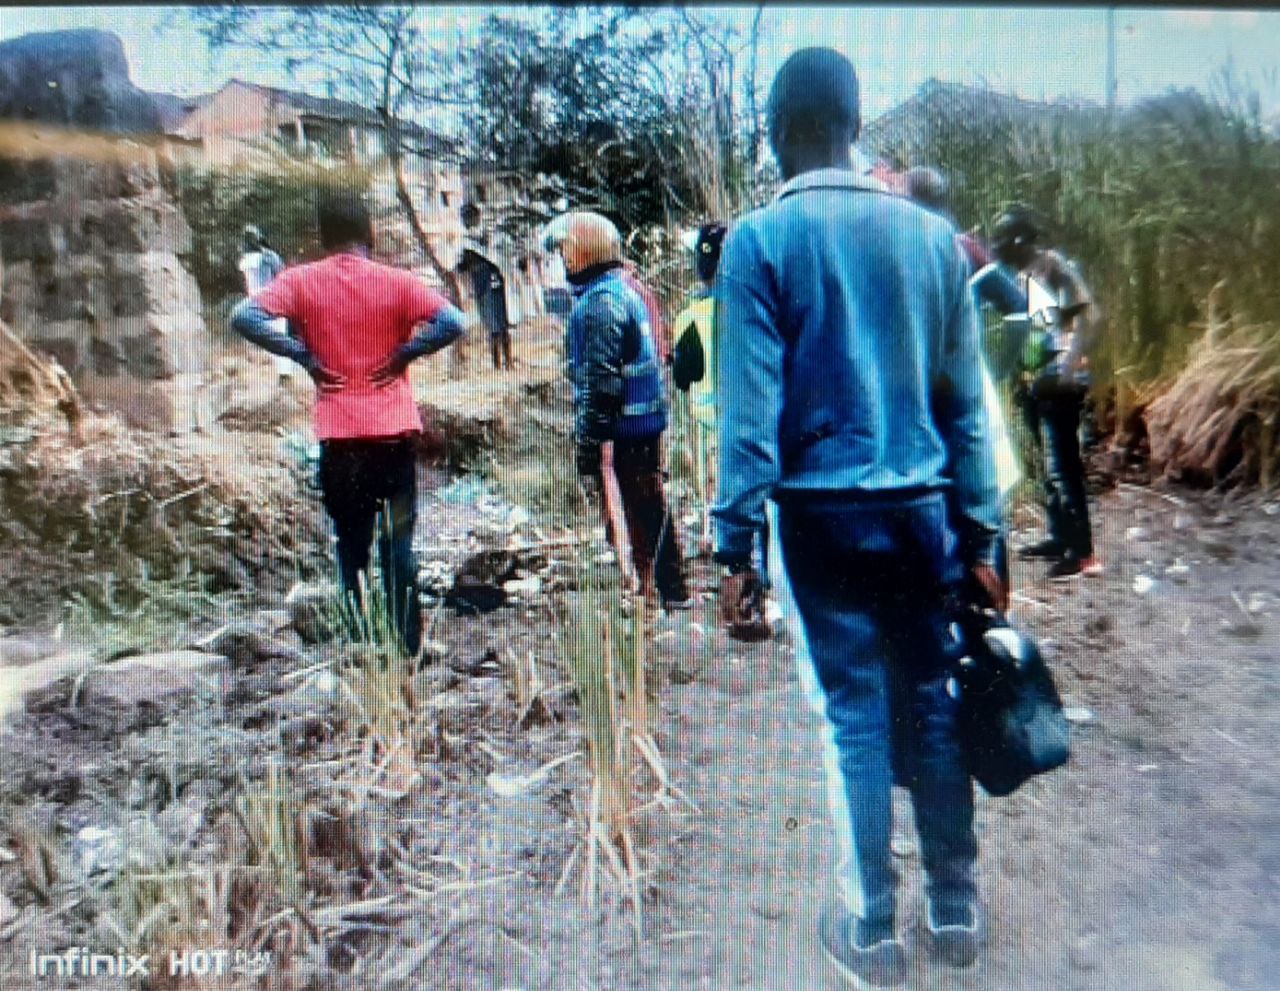 Man found sodomised and murdered in Kiambu